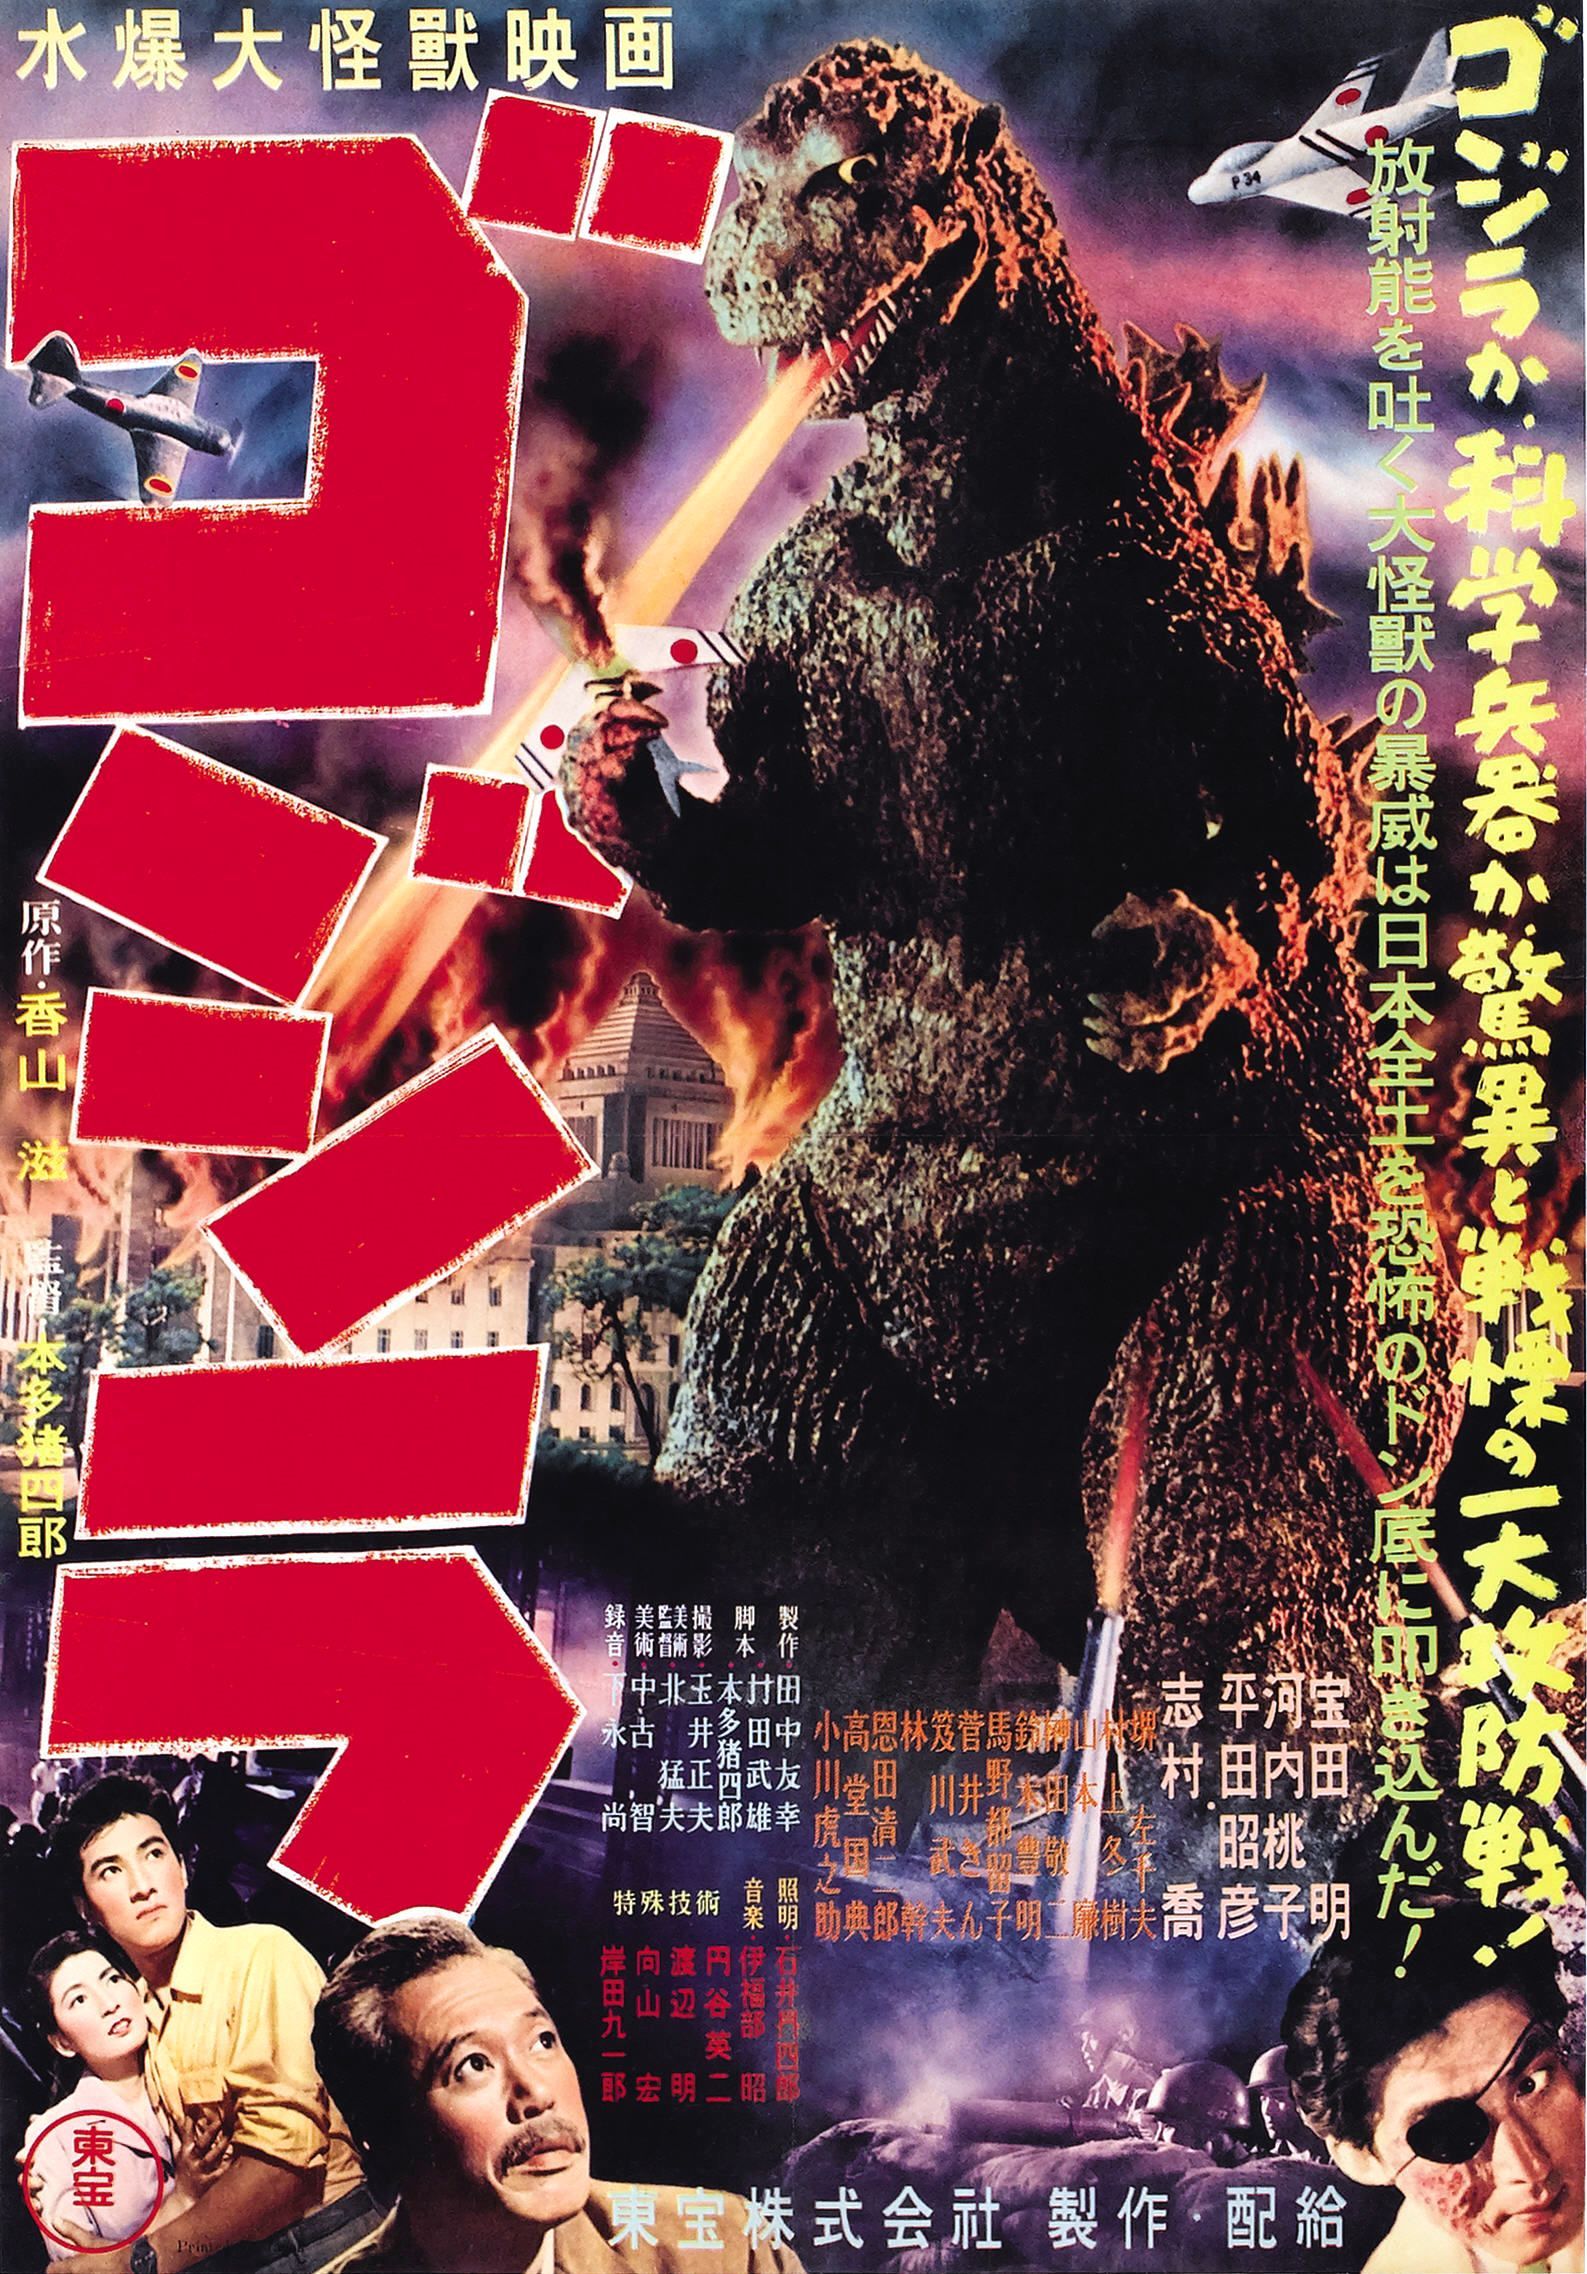 Godzilla 1954 Film Poster